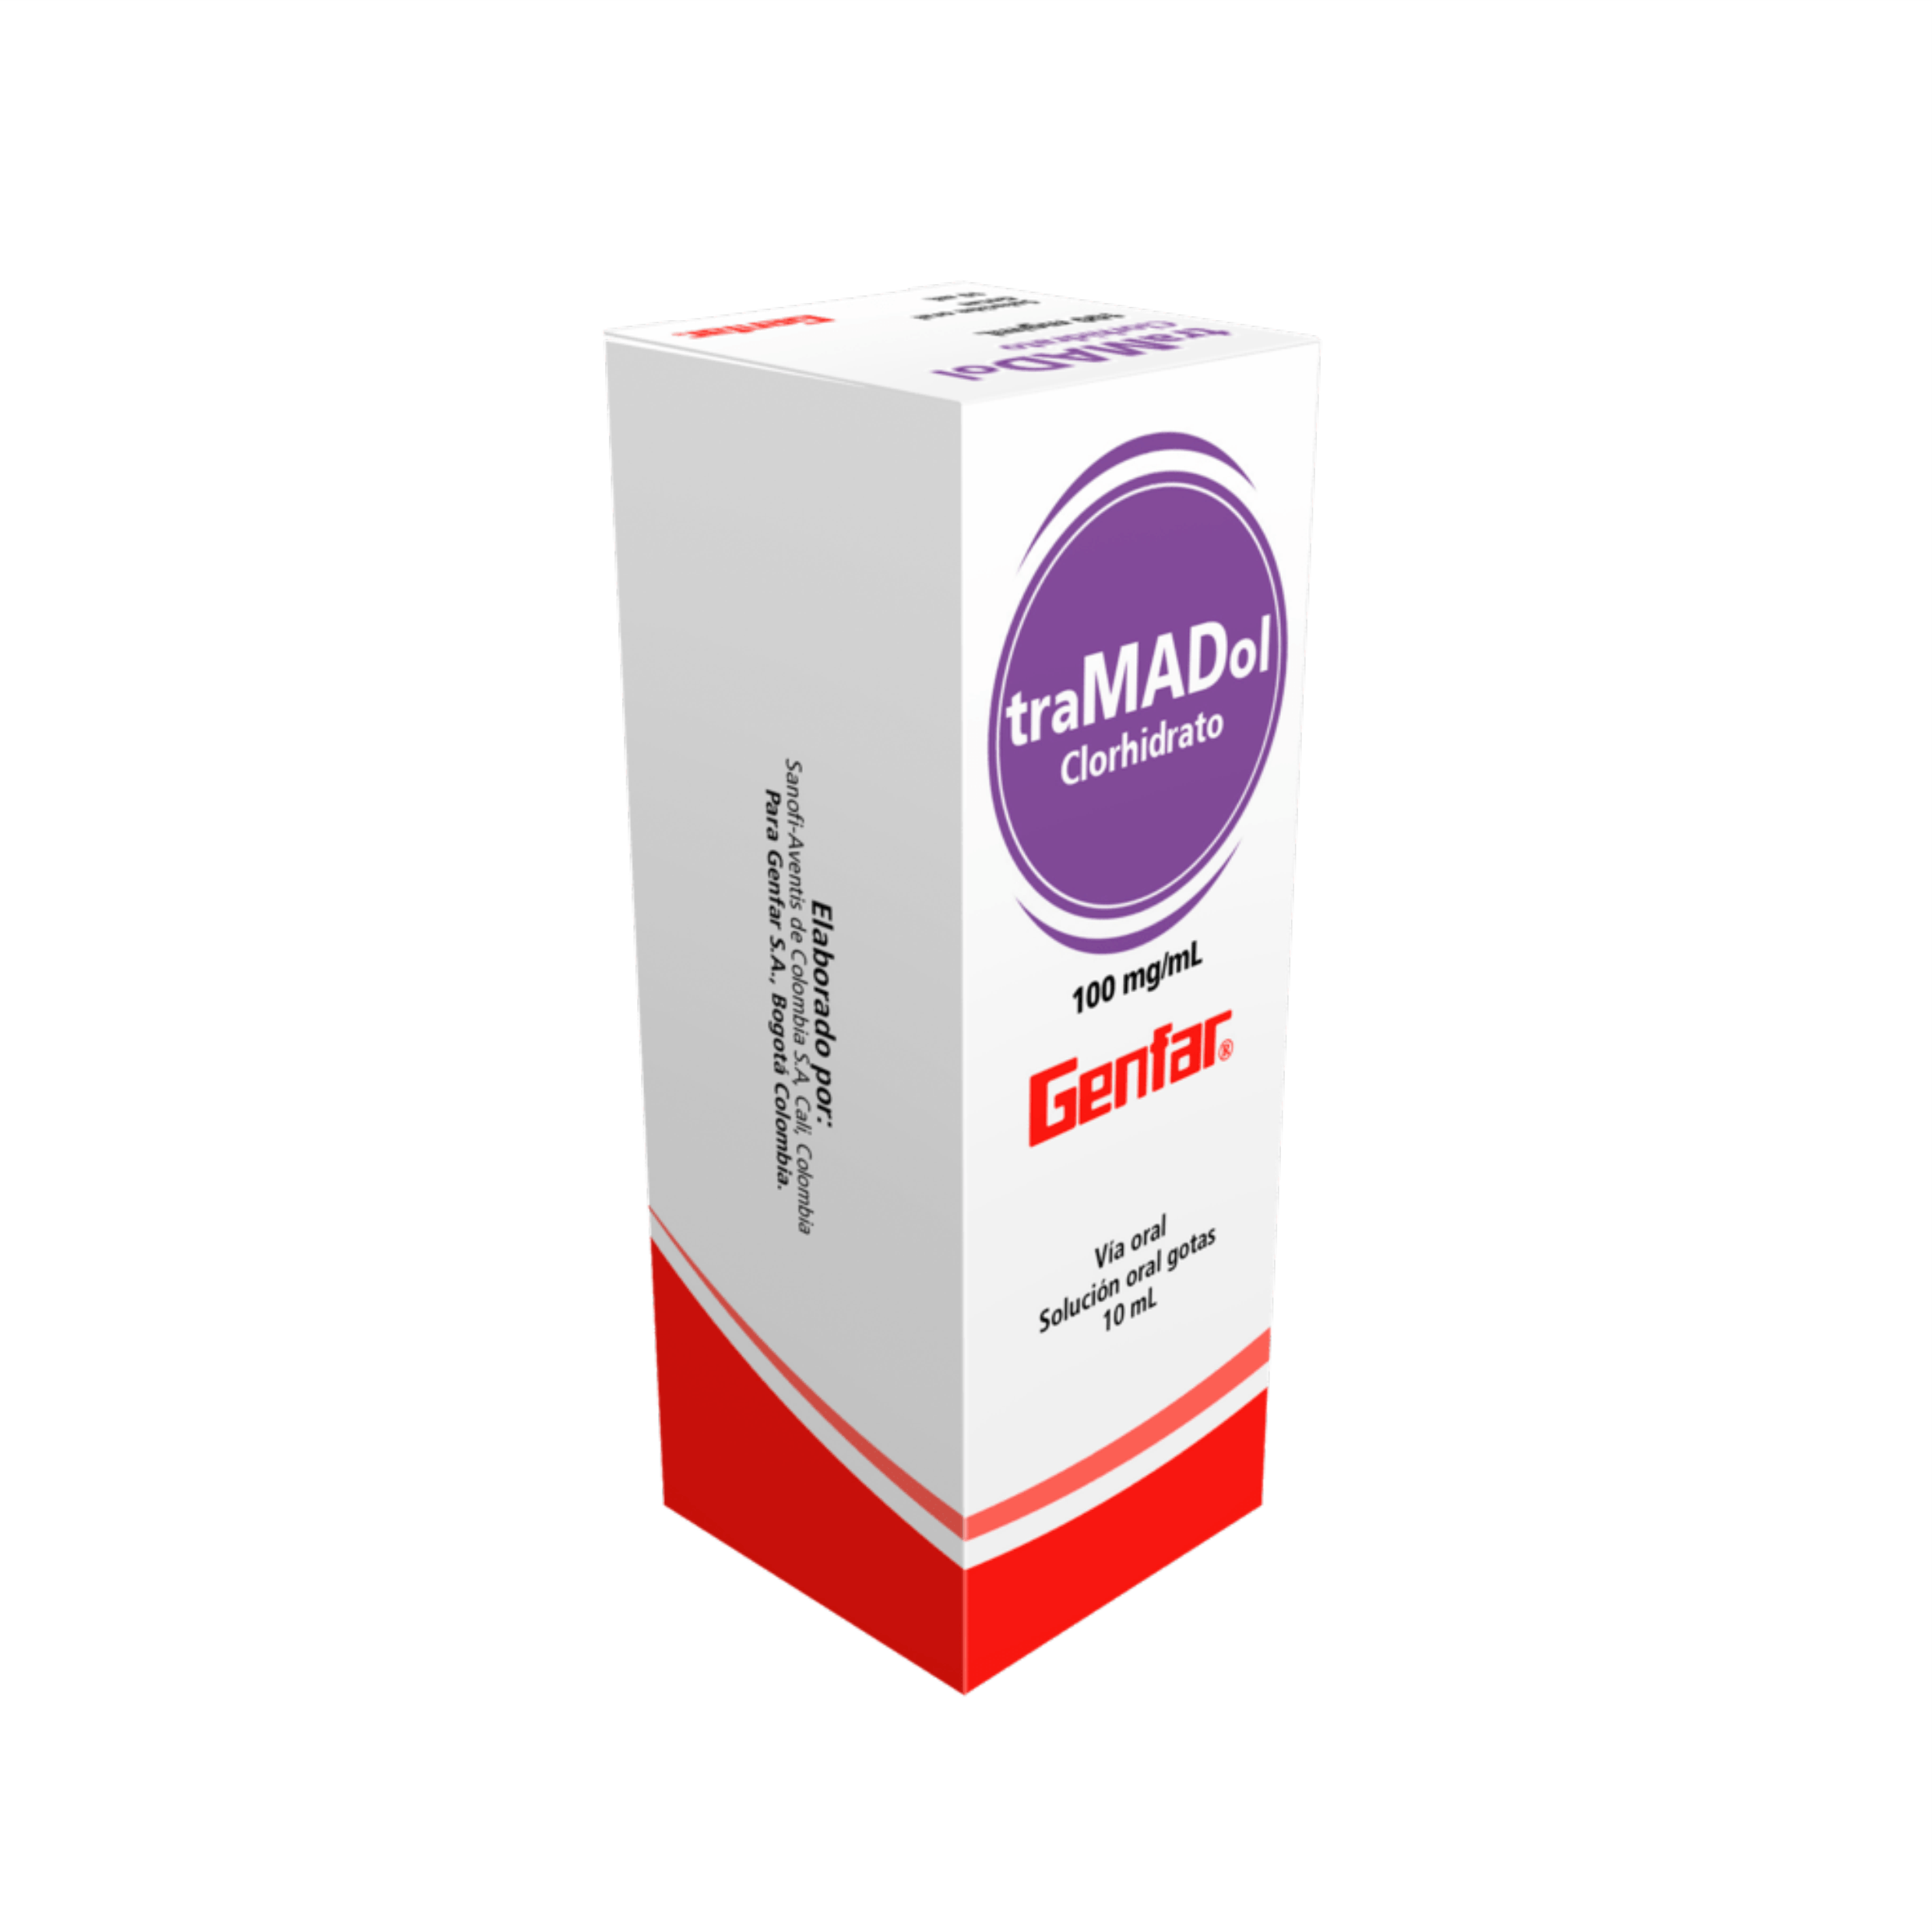 Tramadol Clorhidrato 100mg/mL Gotas- Vía Oral 10 mL